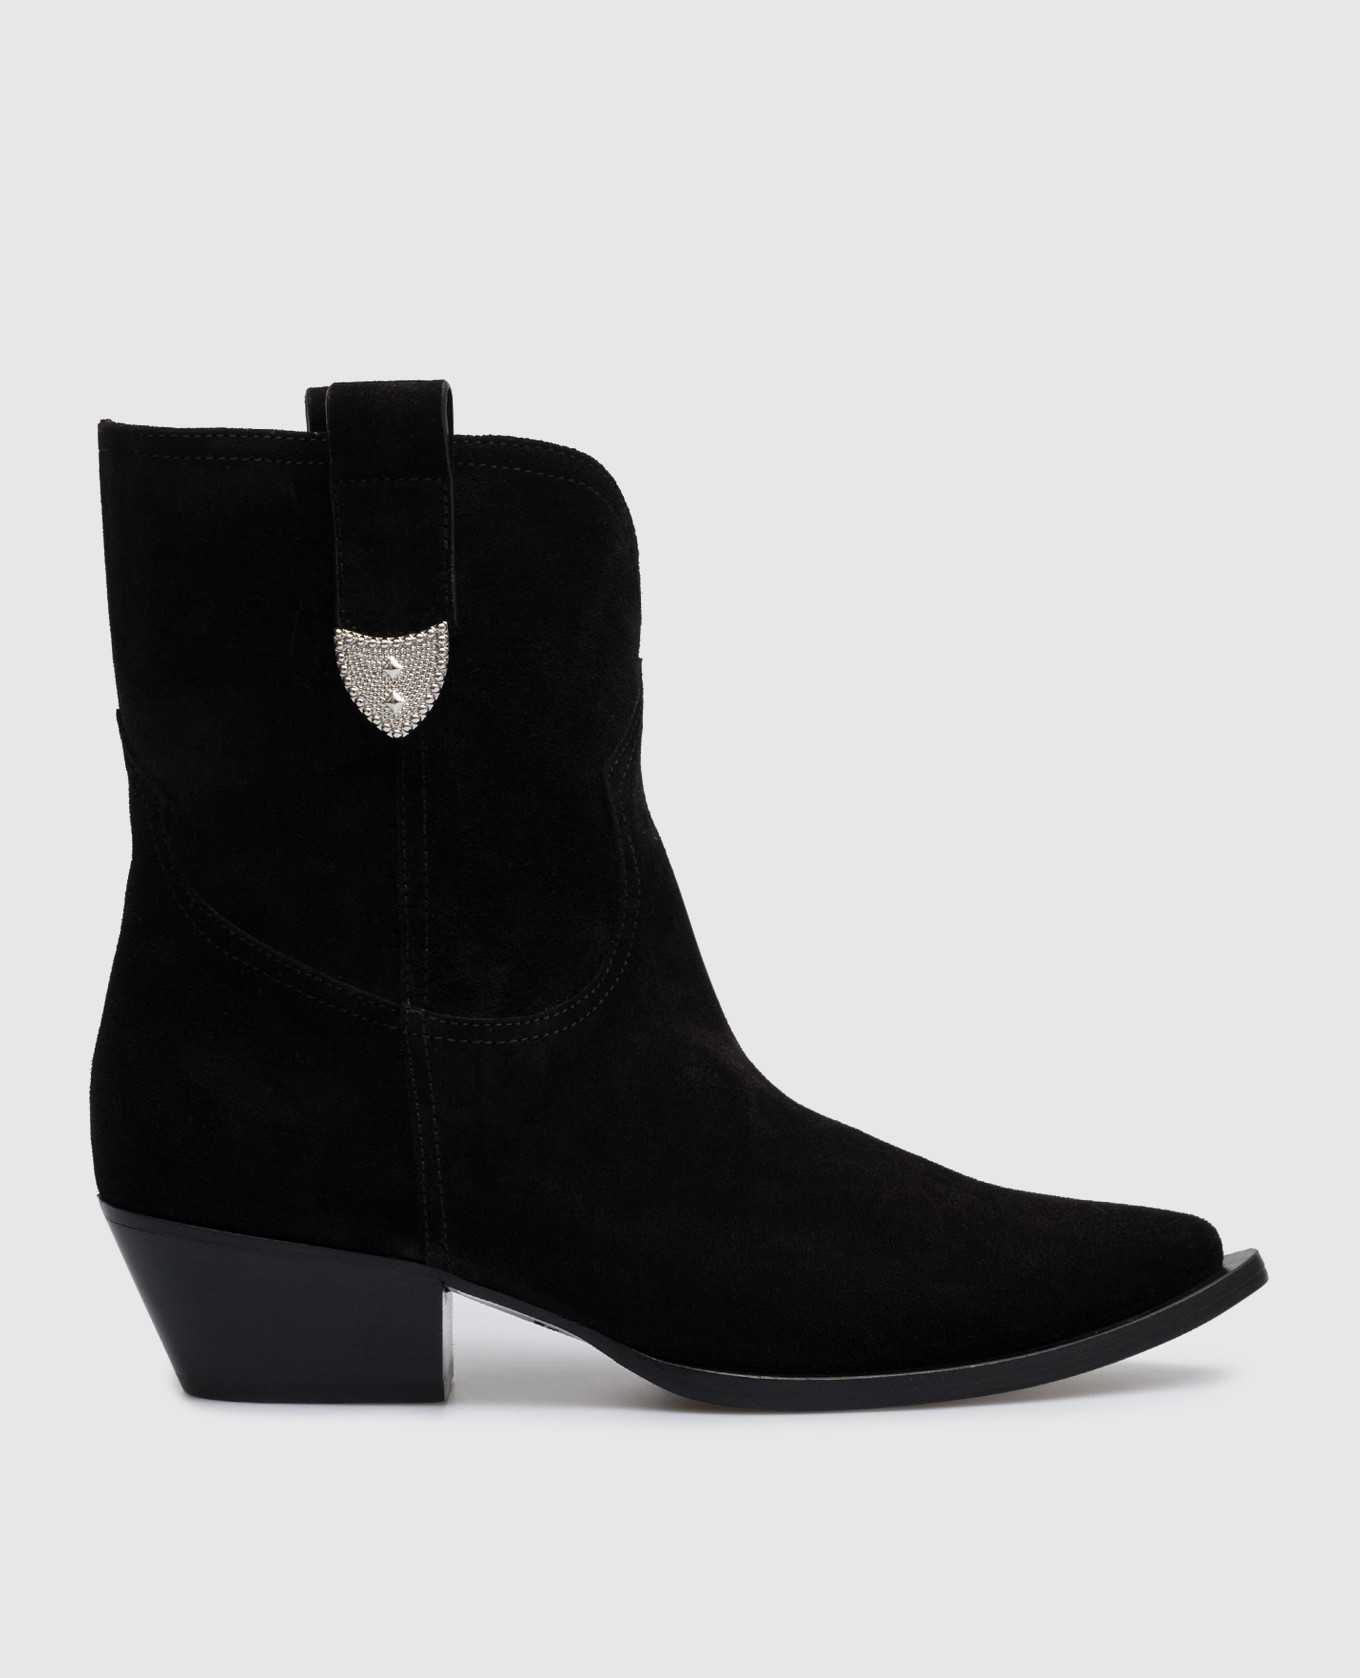 Paris black suede boots with metal details